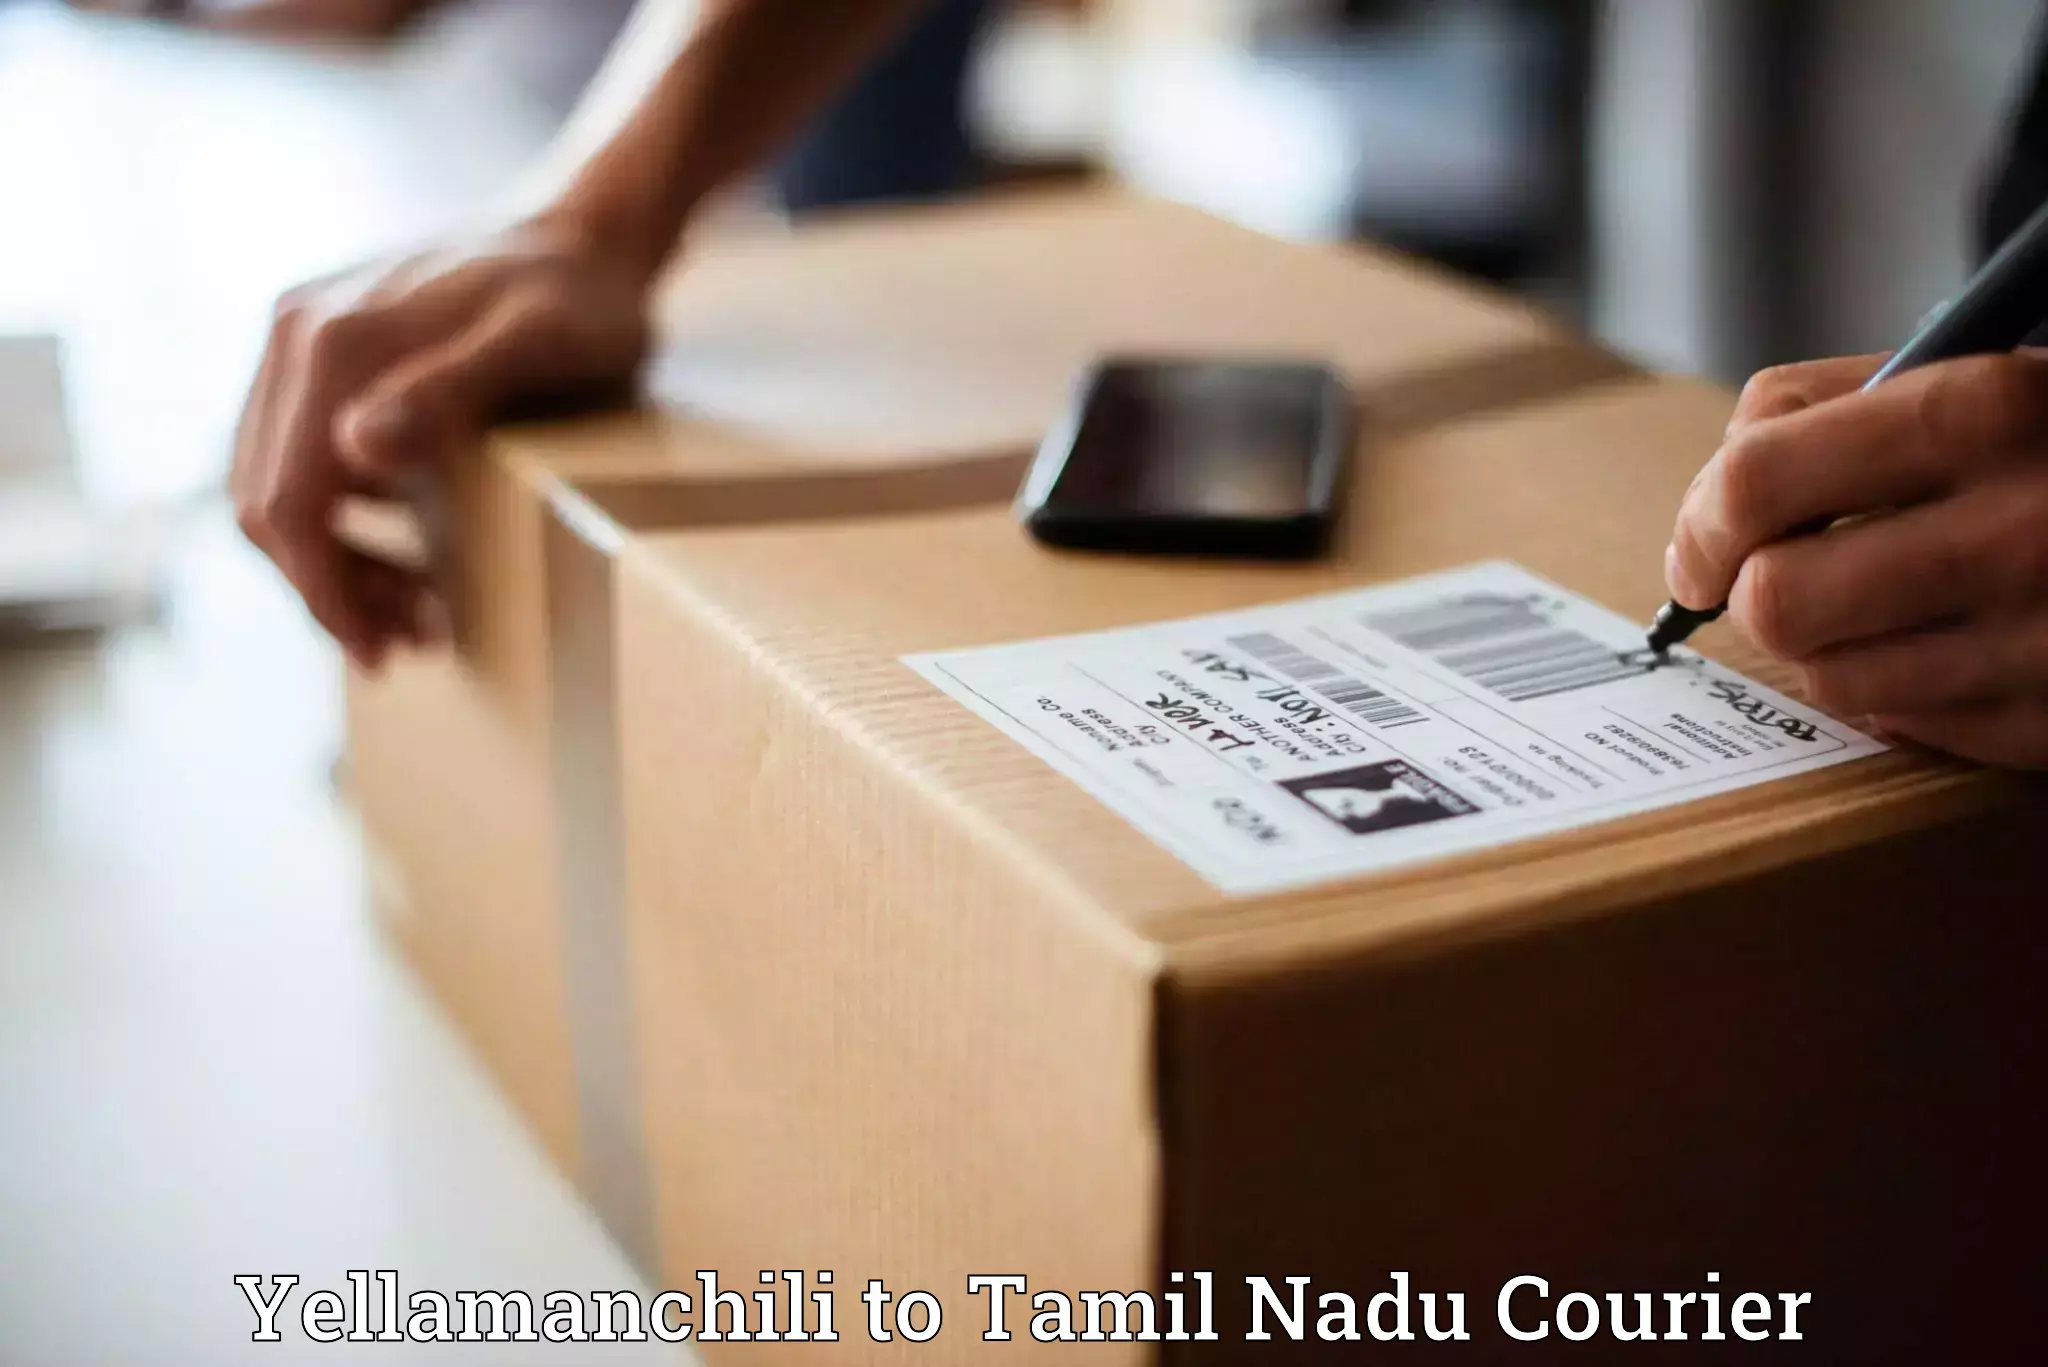 Bulk order courier Yellamanchili to Rathinasabapathy Puram